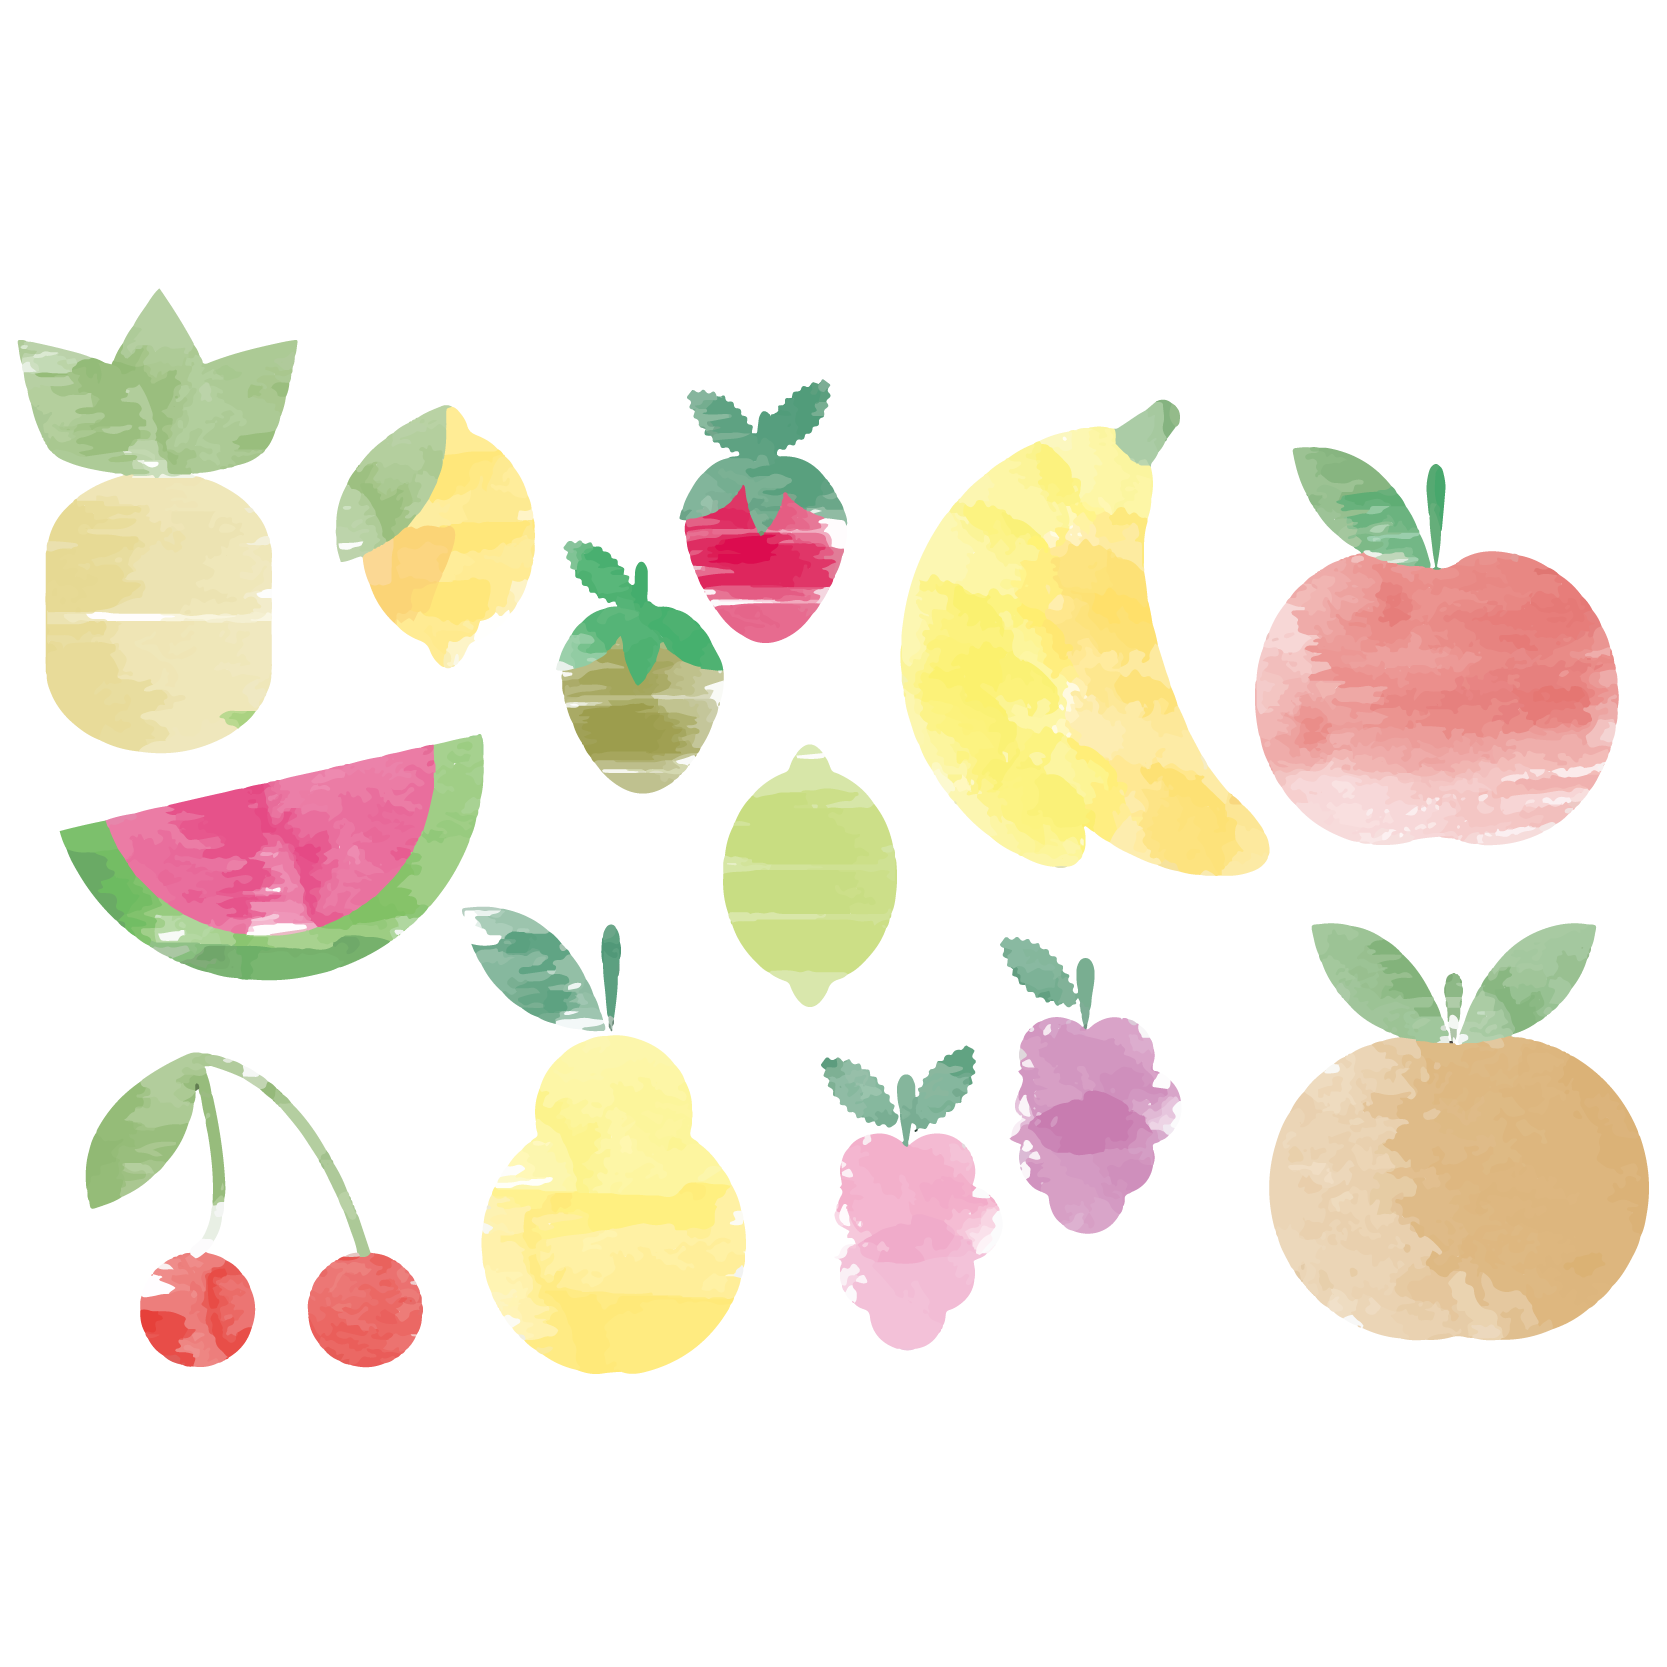 Fruit watercolor